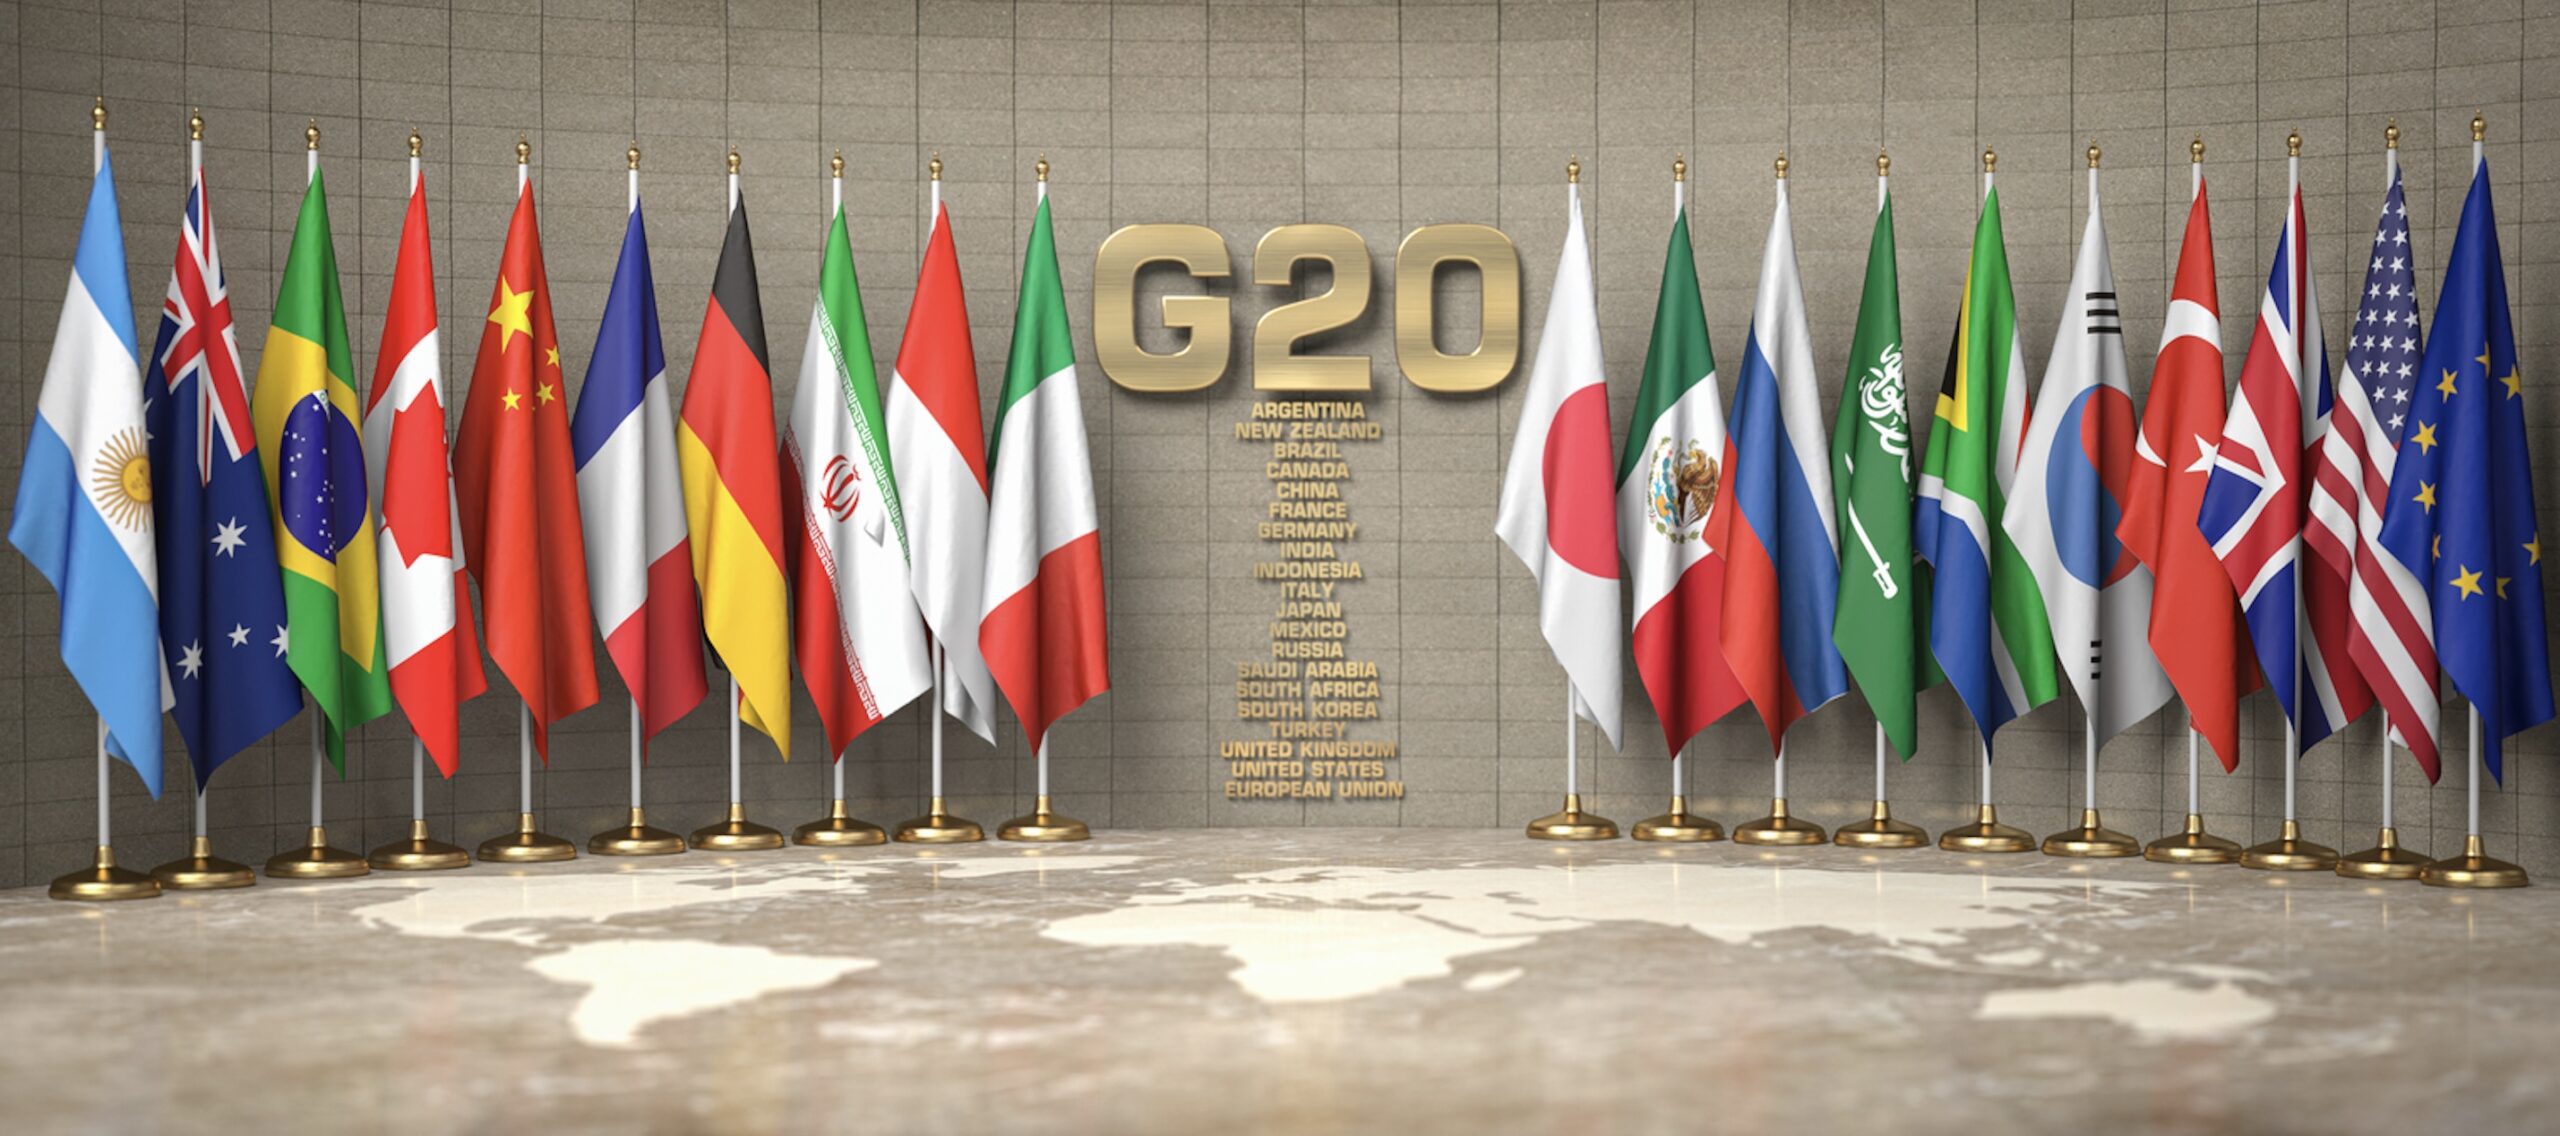 युक्रेनमा रूसी आक्रमणको जी-२० सम्मेलनमा भर्त्सना, खाद्य सुरक्षा मुख्य एजेण्डा